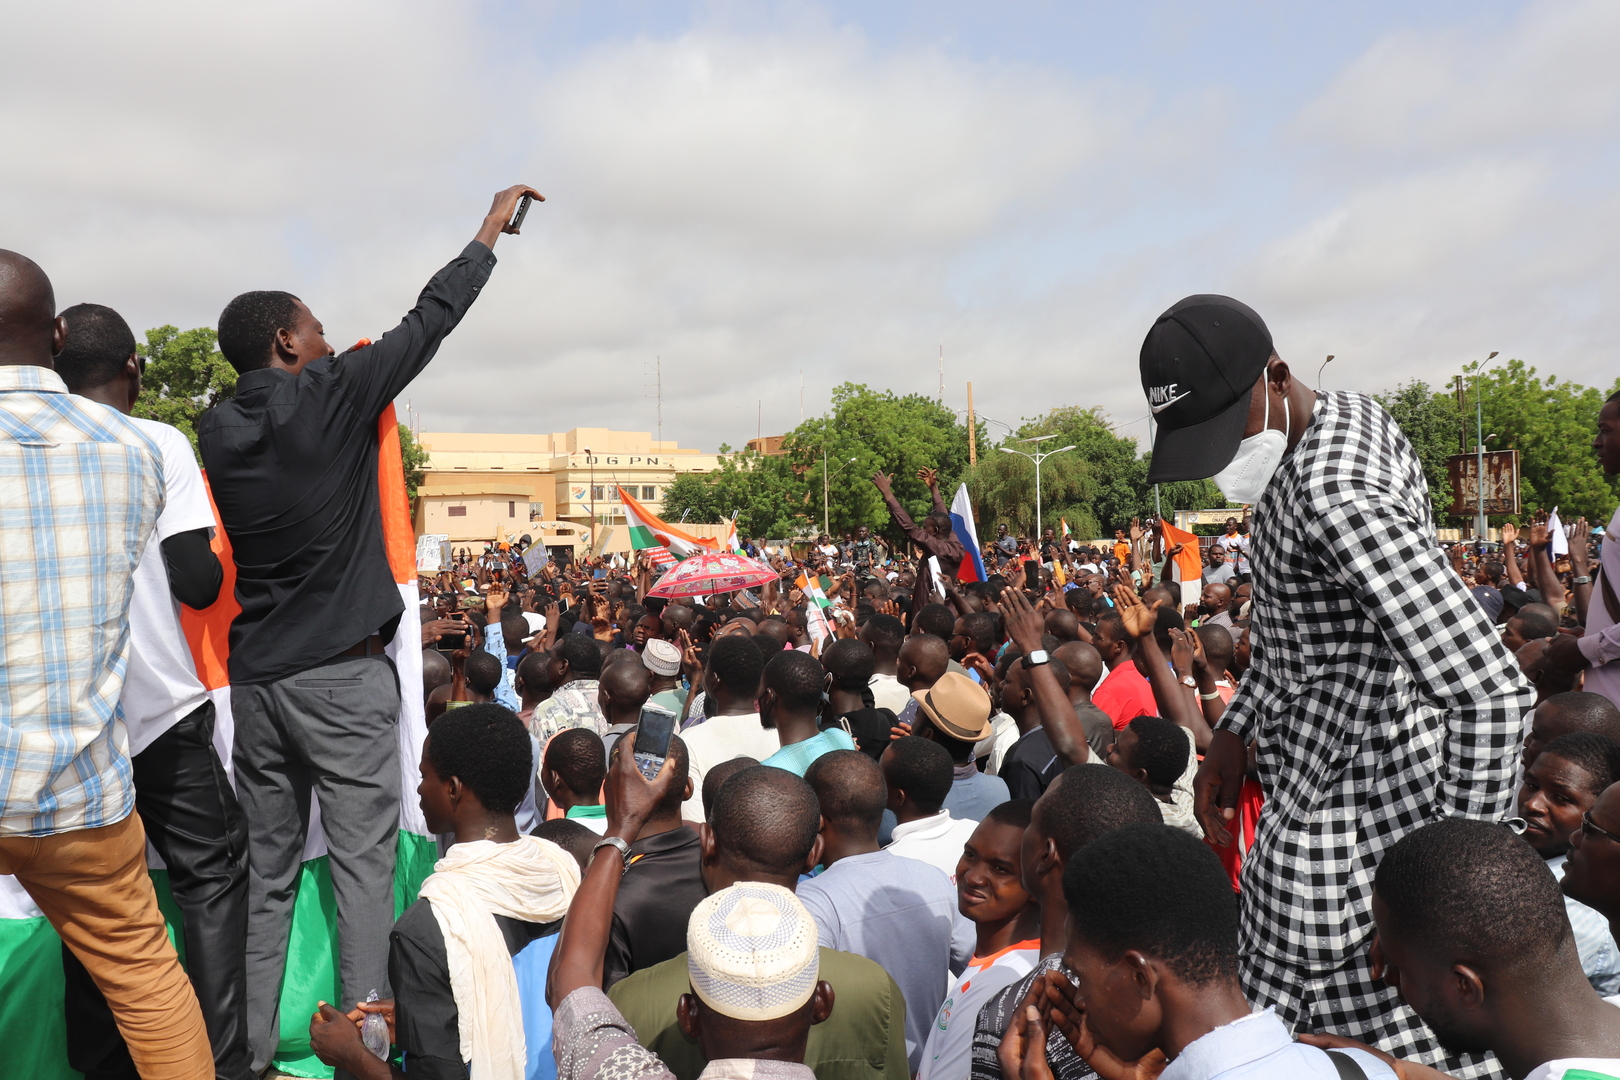 احتجاجات في شمال النيجر تطالب برحيل القوات الأمريكية من البلاد